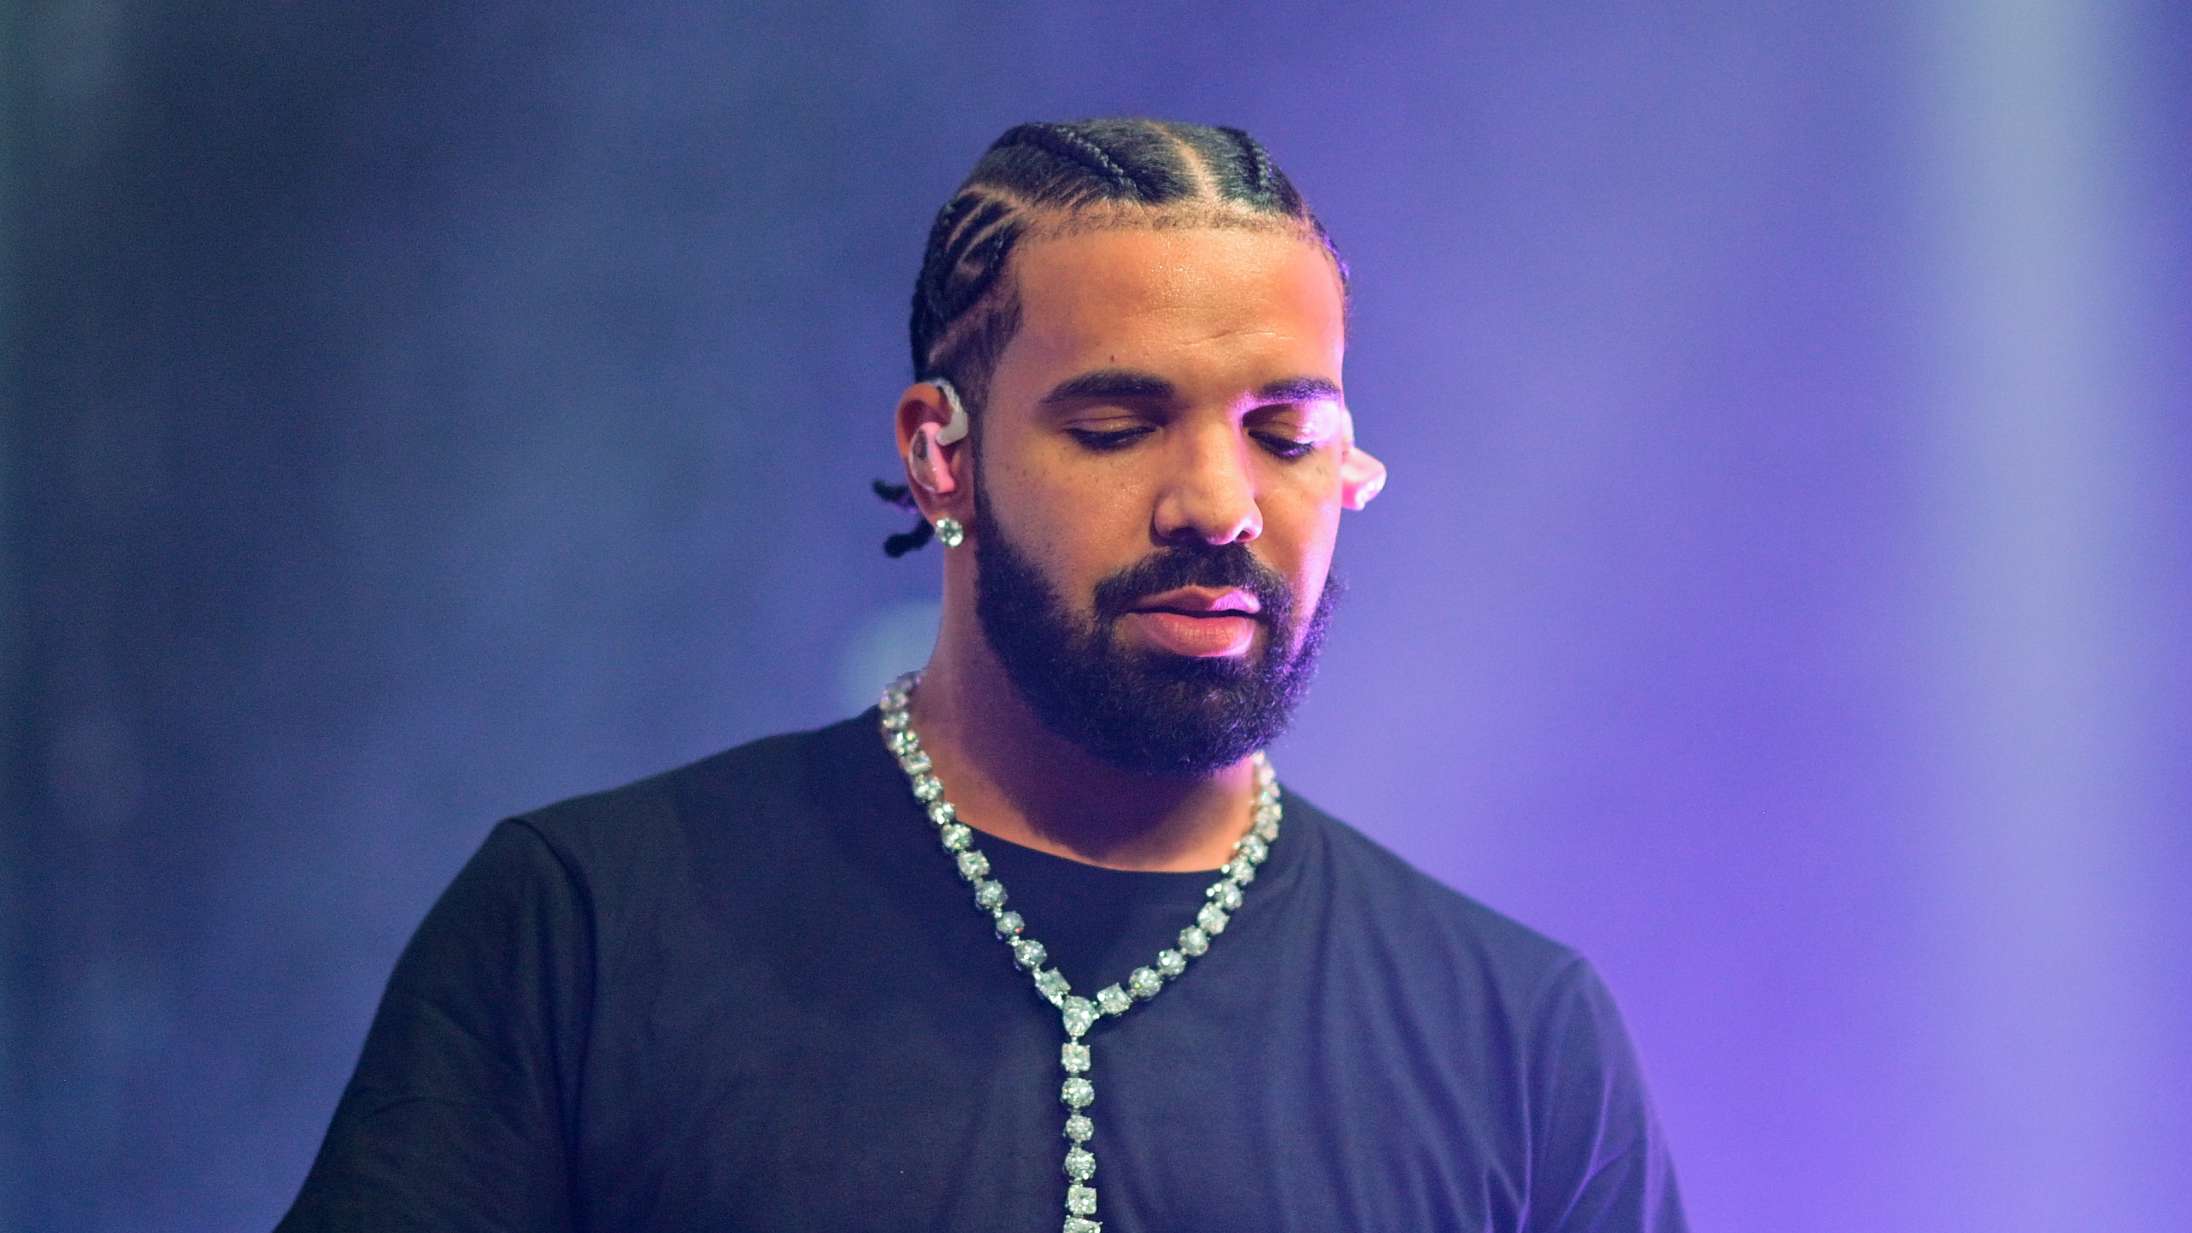 Drake sender storsviner af sted mod rapkollega efter kritik af nyt album